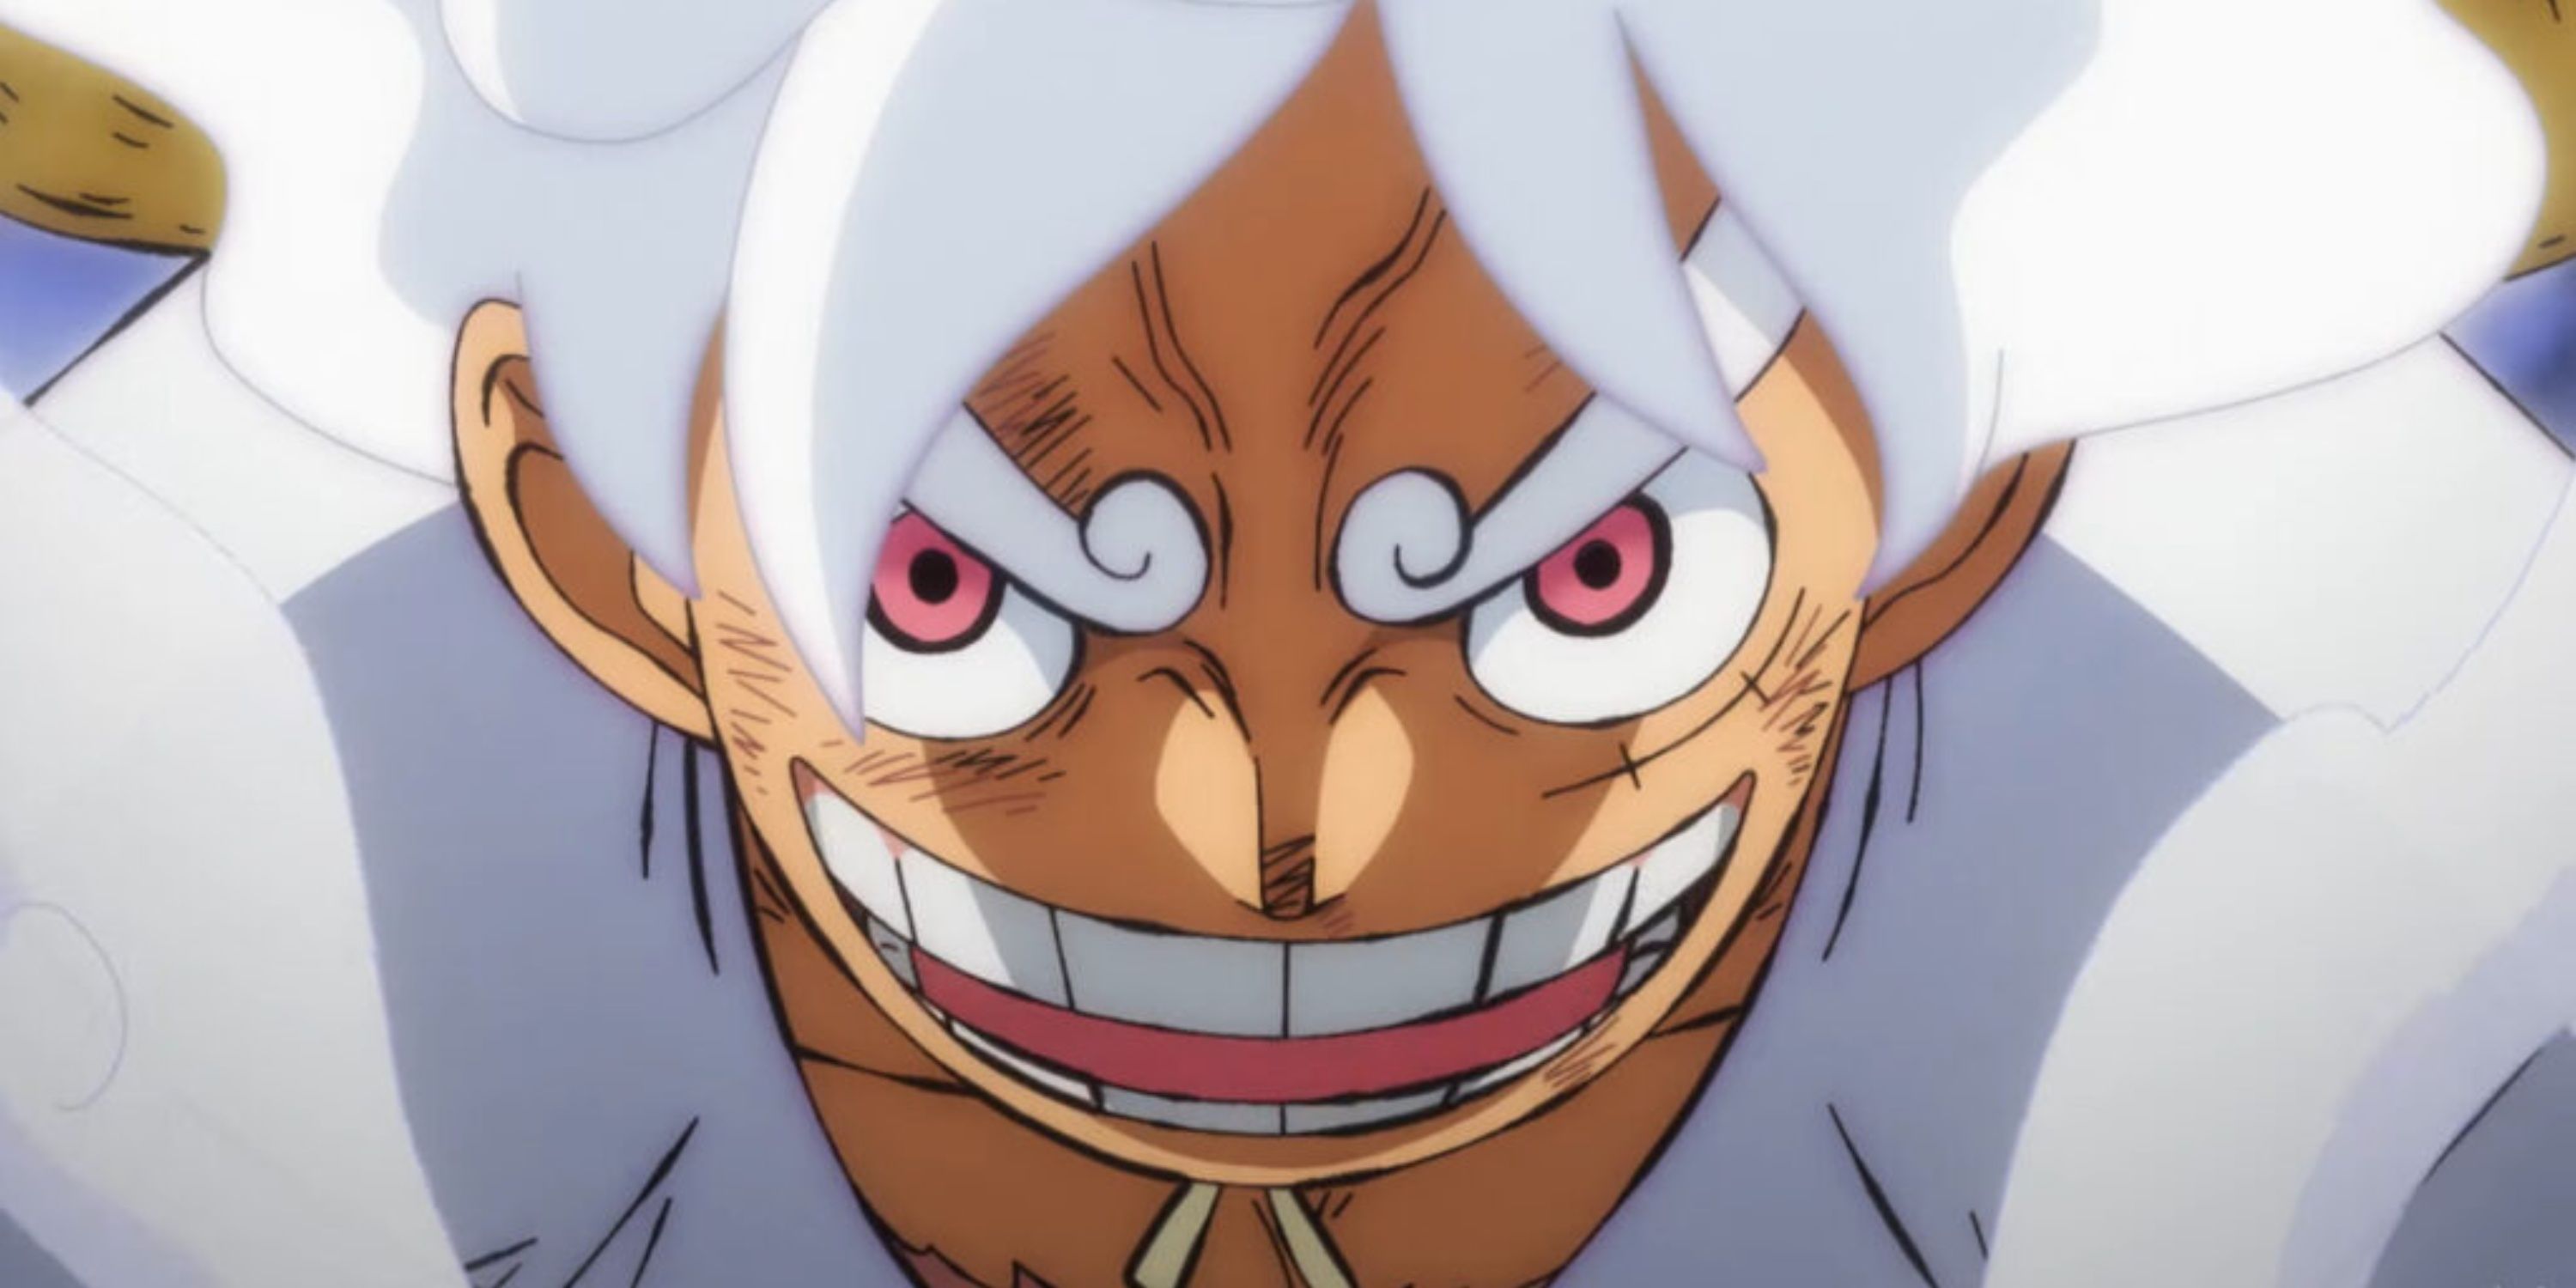 Forma Gear 5 de Monkey D. Luffy conforme aparece no episódio 1073 do anime One Piece